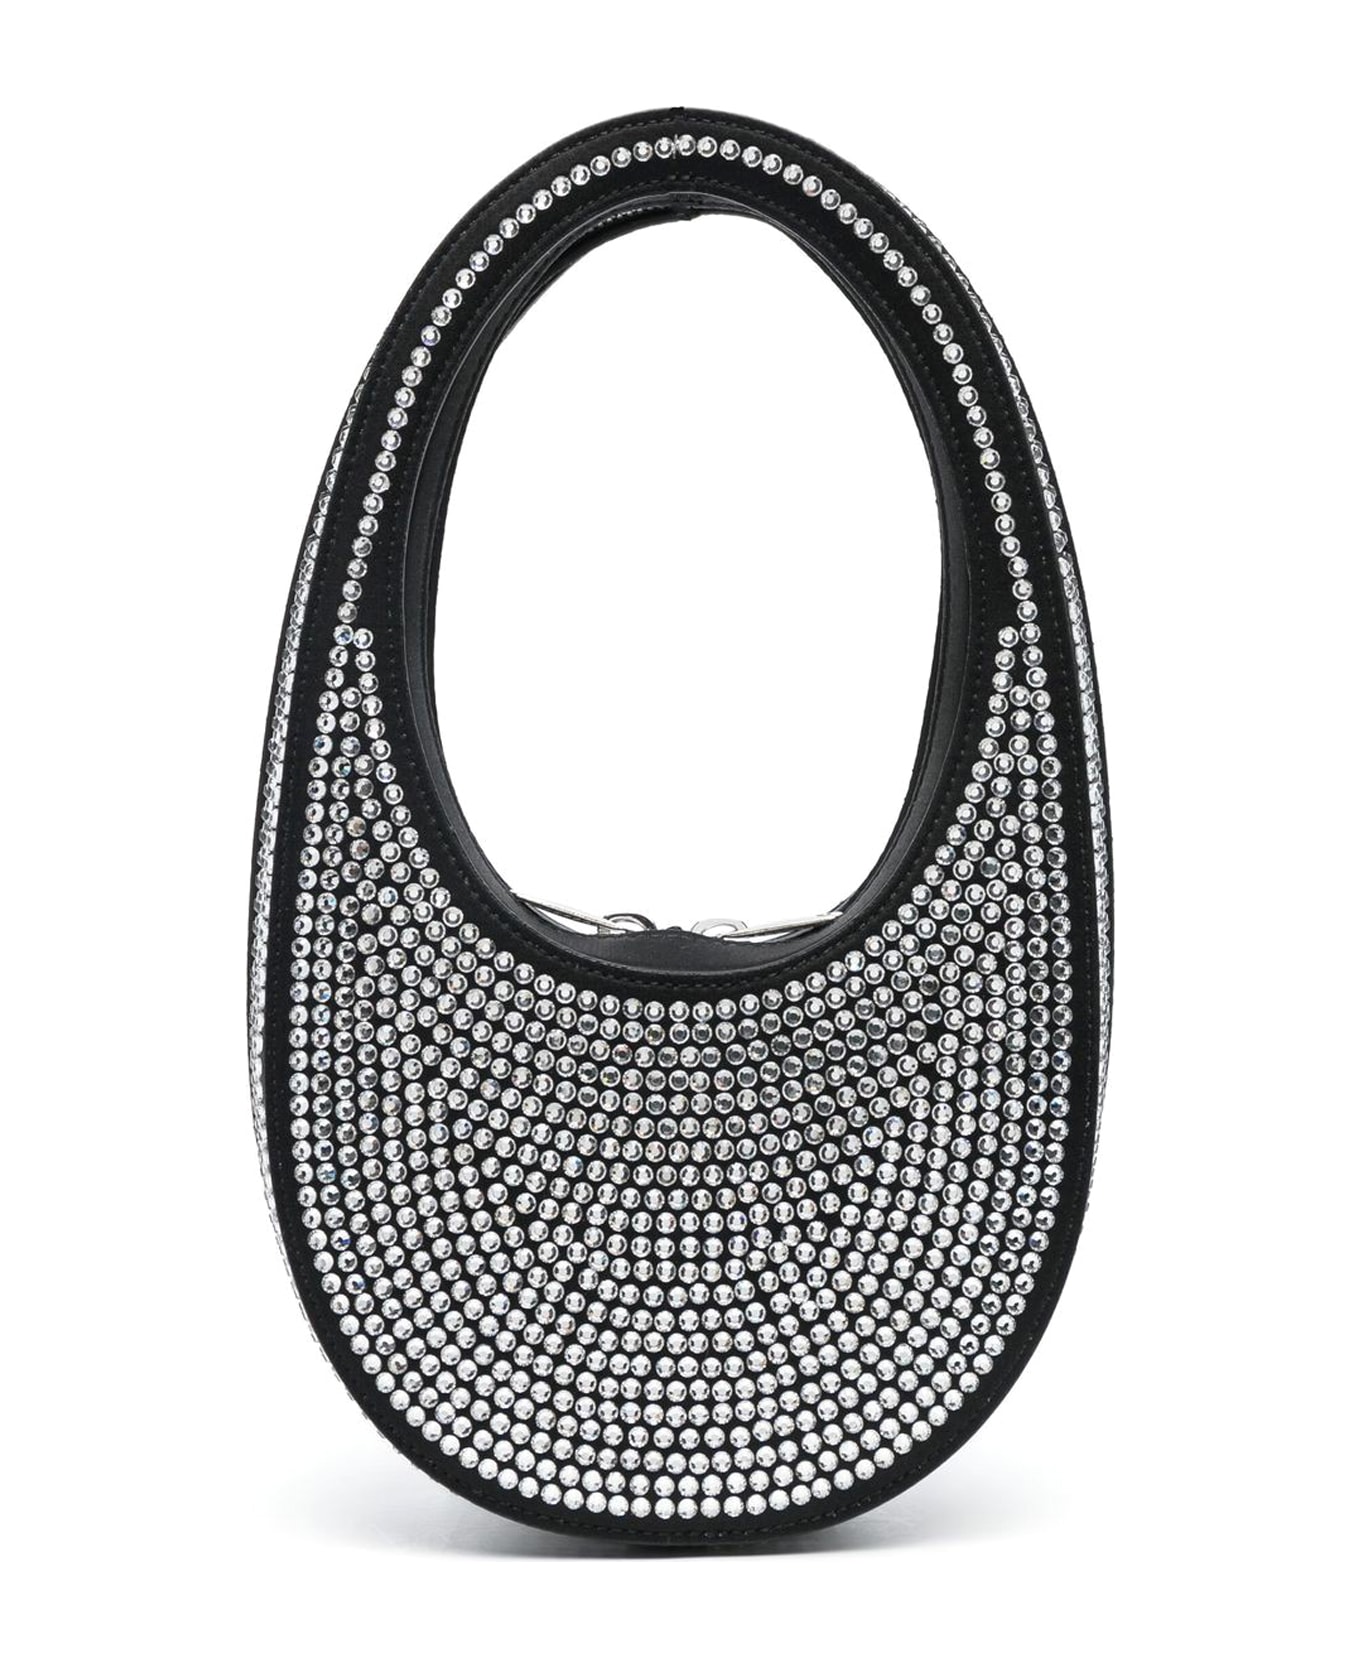 Coperni Swipe Embellished Tote Bag - Bkcs Black Crystal